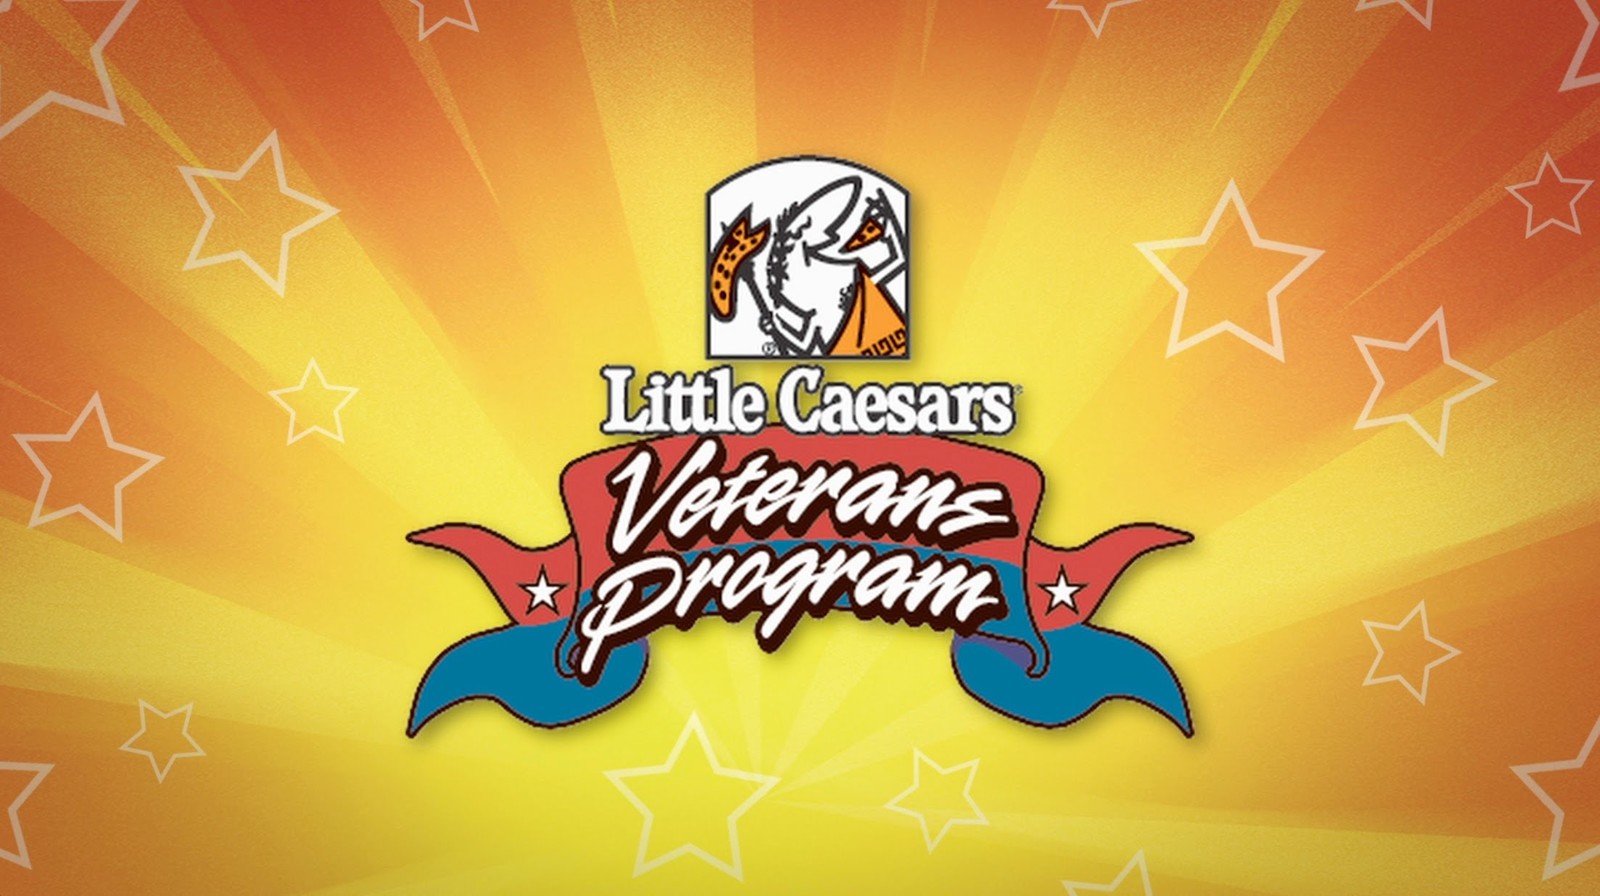 Little Caesars Veterans Program